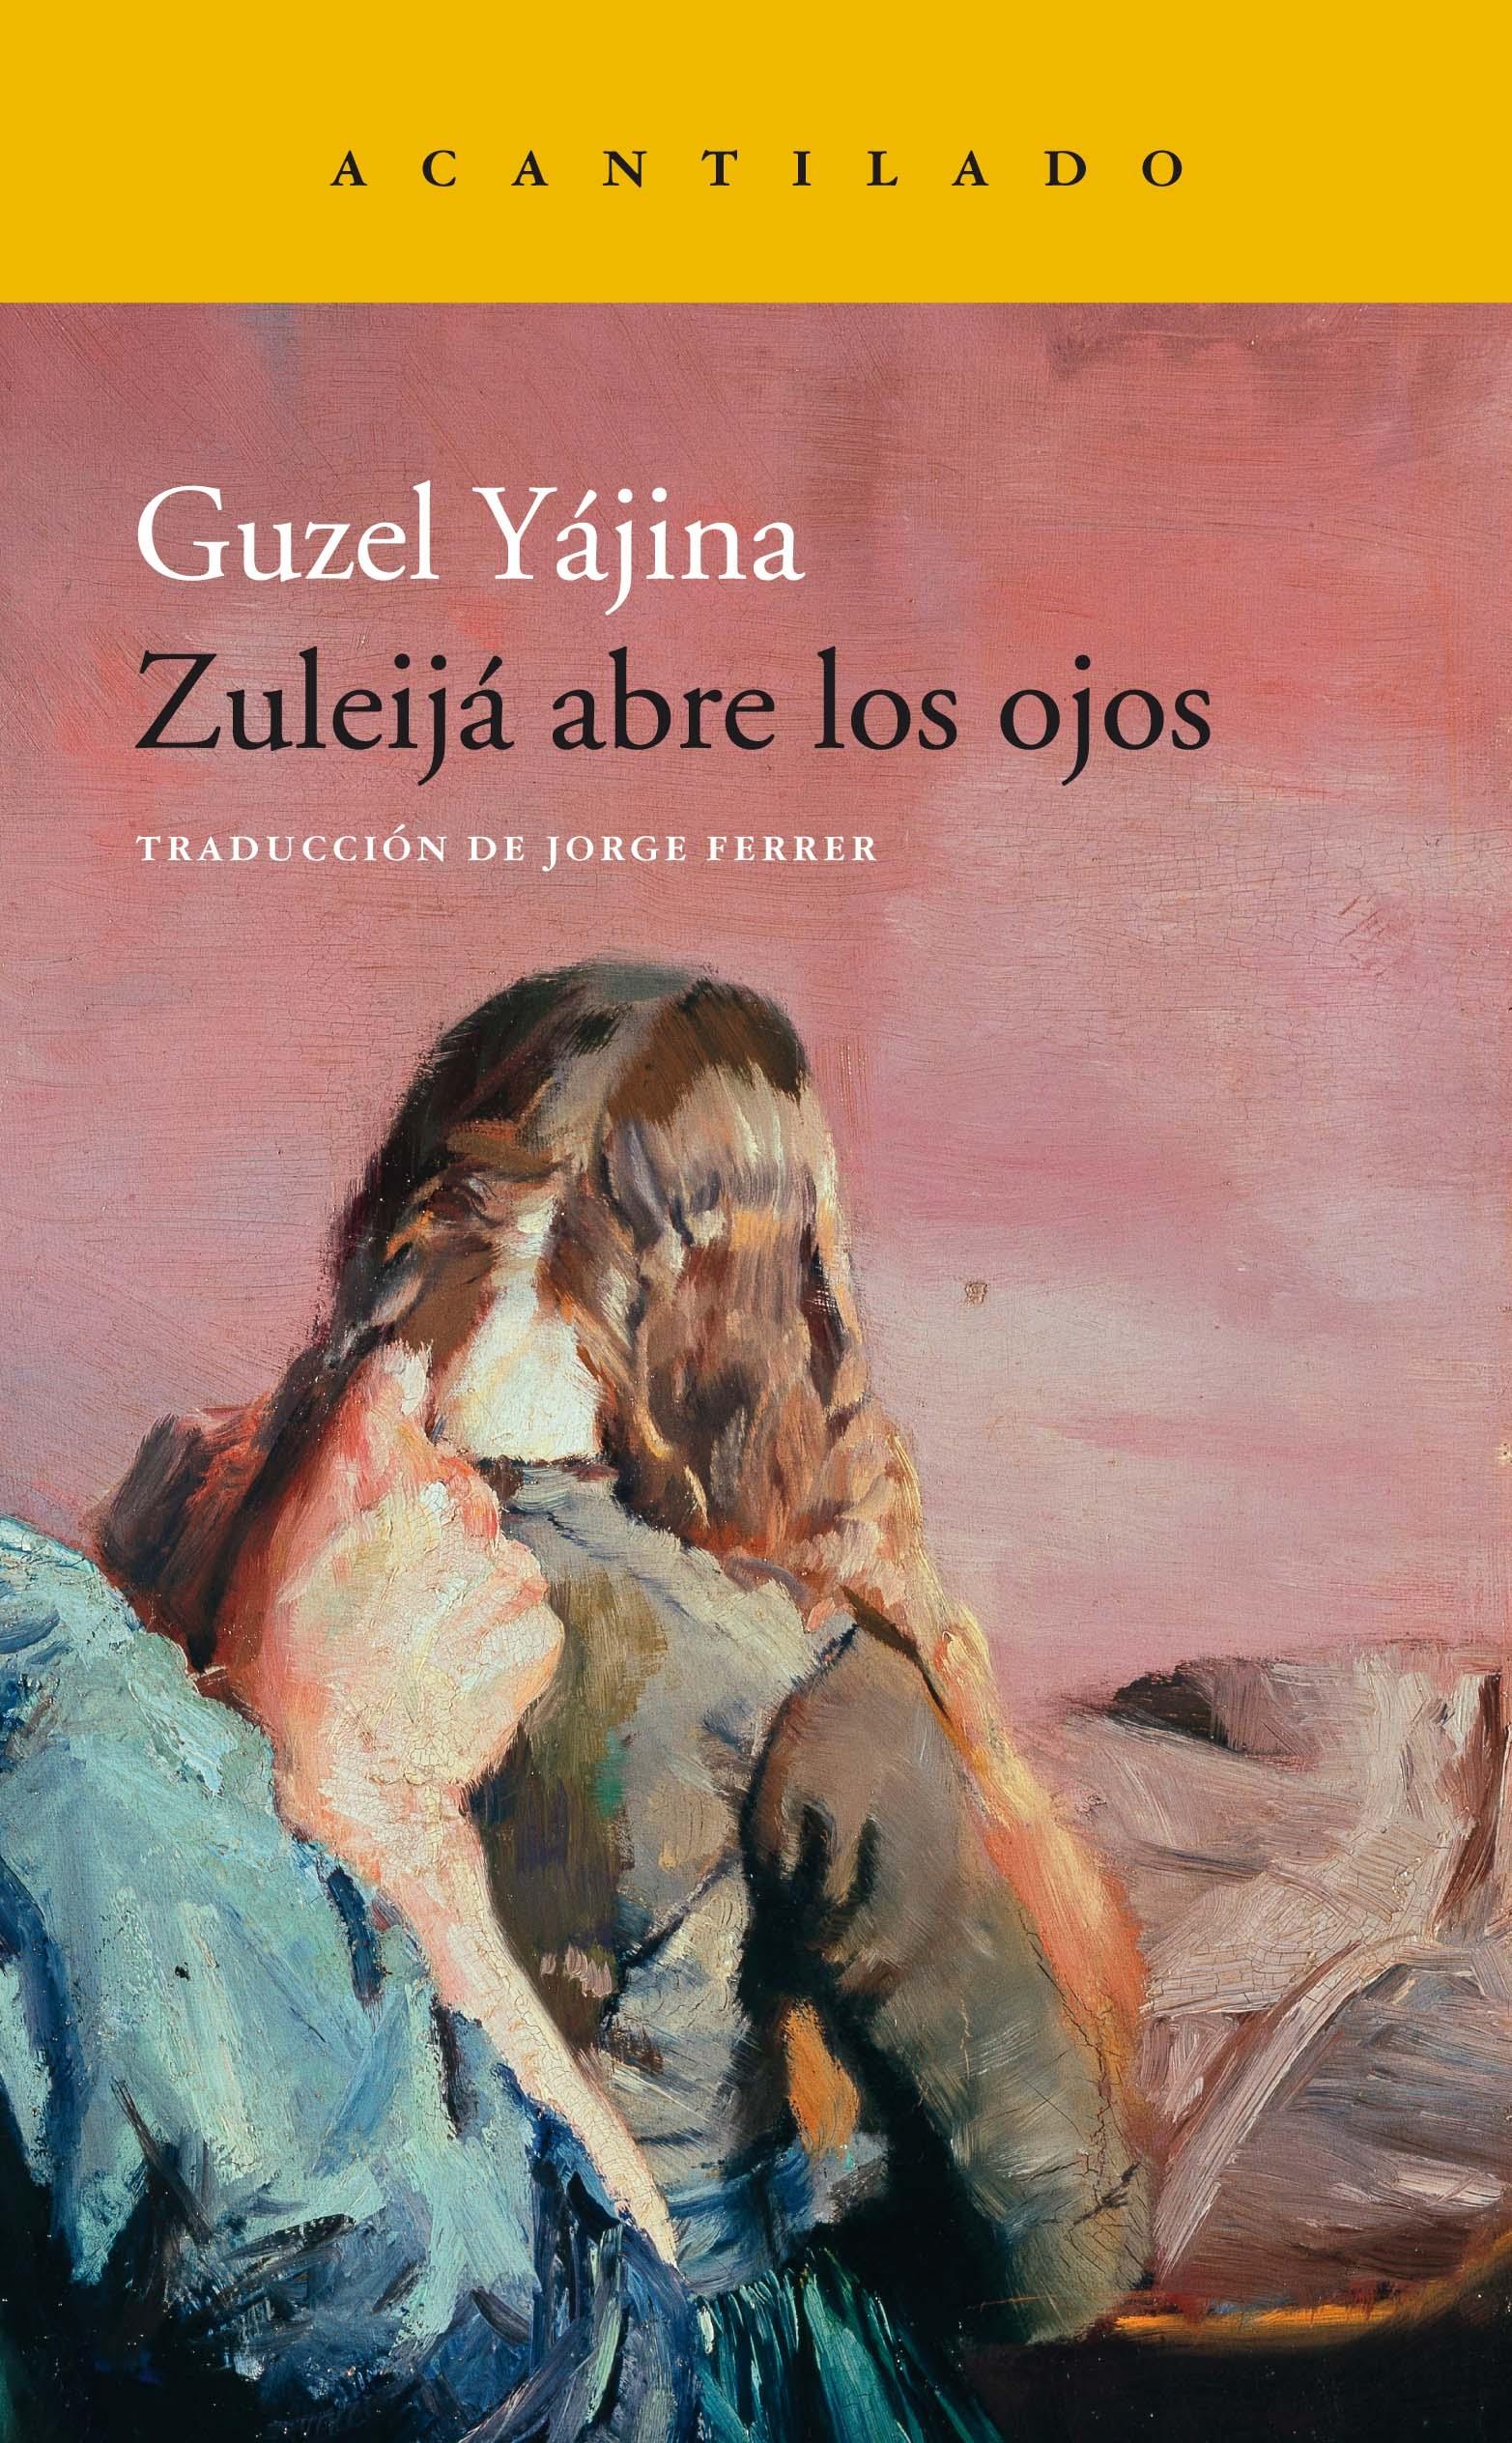 Zuleijá abre los ojos "Premio gran libro 2015 en Rusia. Premio Yásnaia Poliana 2015"